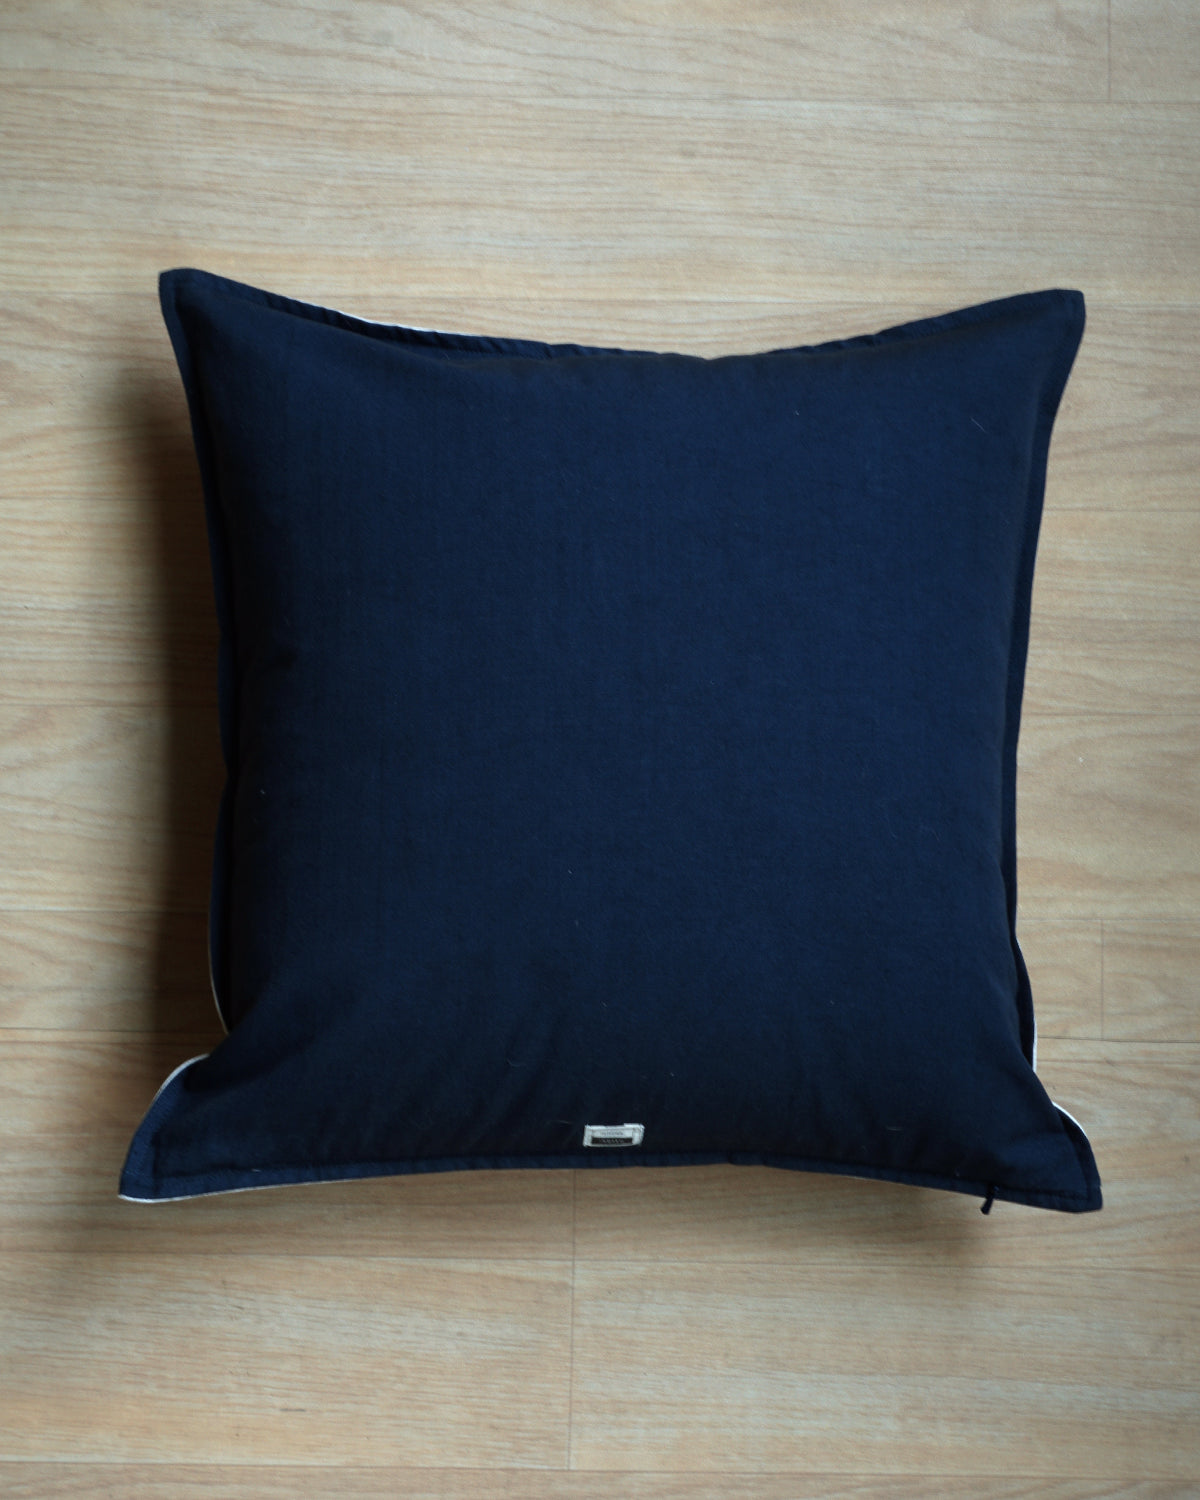 Koi Fish Cushion Cover (16” X 16”)